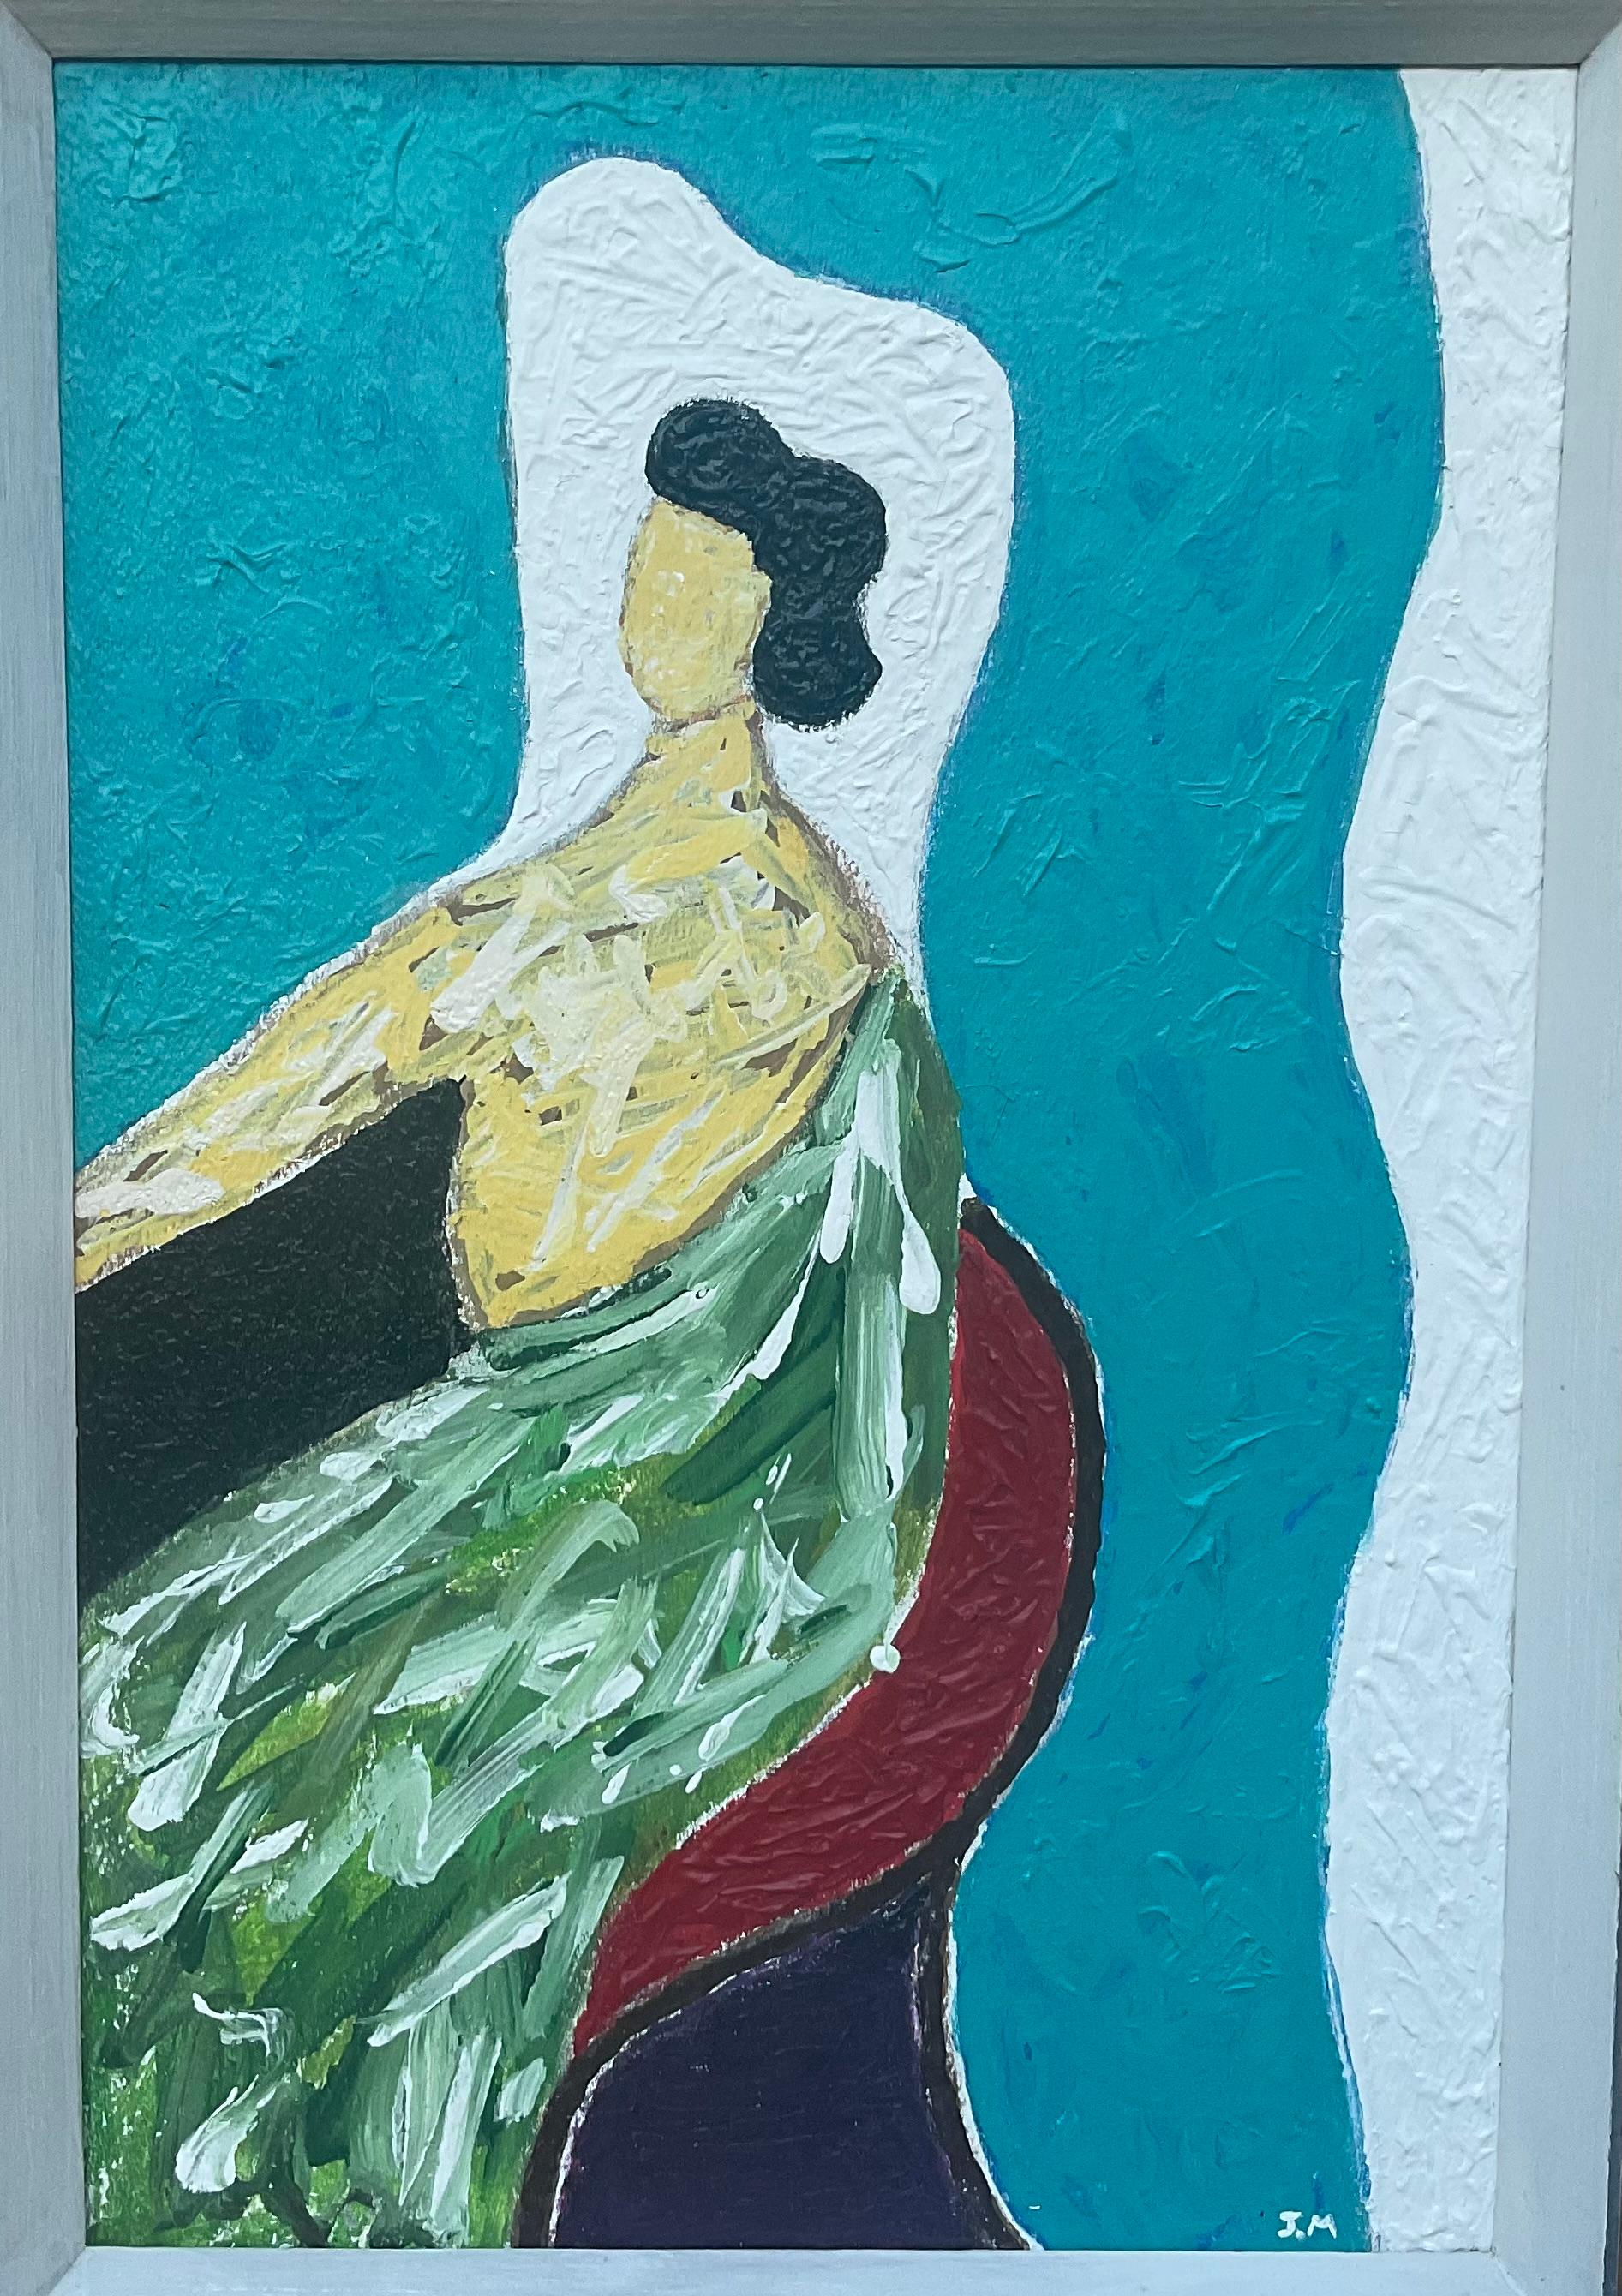 Funky Acryl-Gemälde von Hand auf Holzbrett gemalt, der eleganten Frau sitzt und schaut nach vorne, schöne lebendige Farben auf türkisfarbenen Hintergrund, Antikholzrahmen.
Tatsächliche Größe des Gemäldes: 12